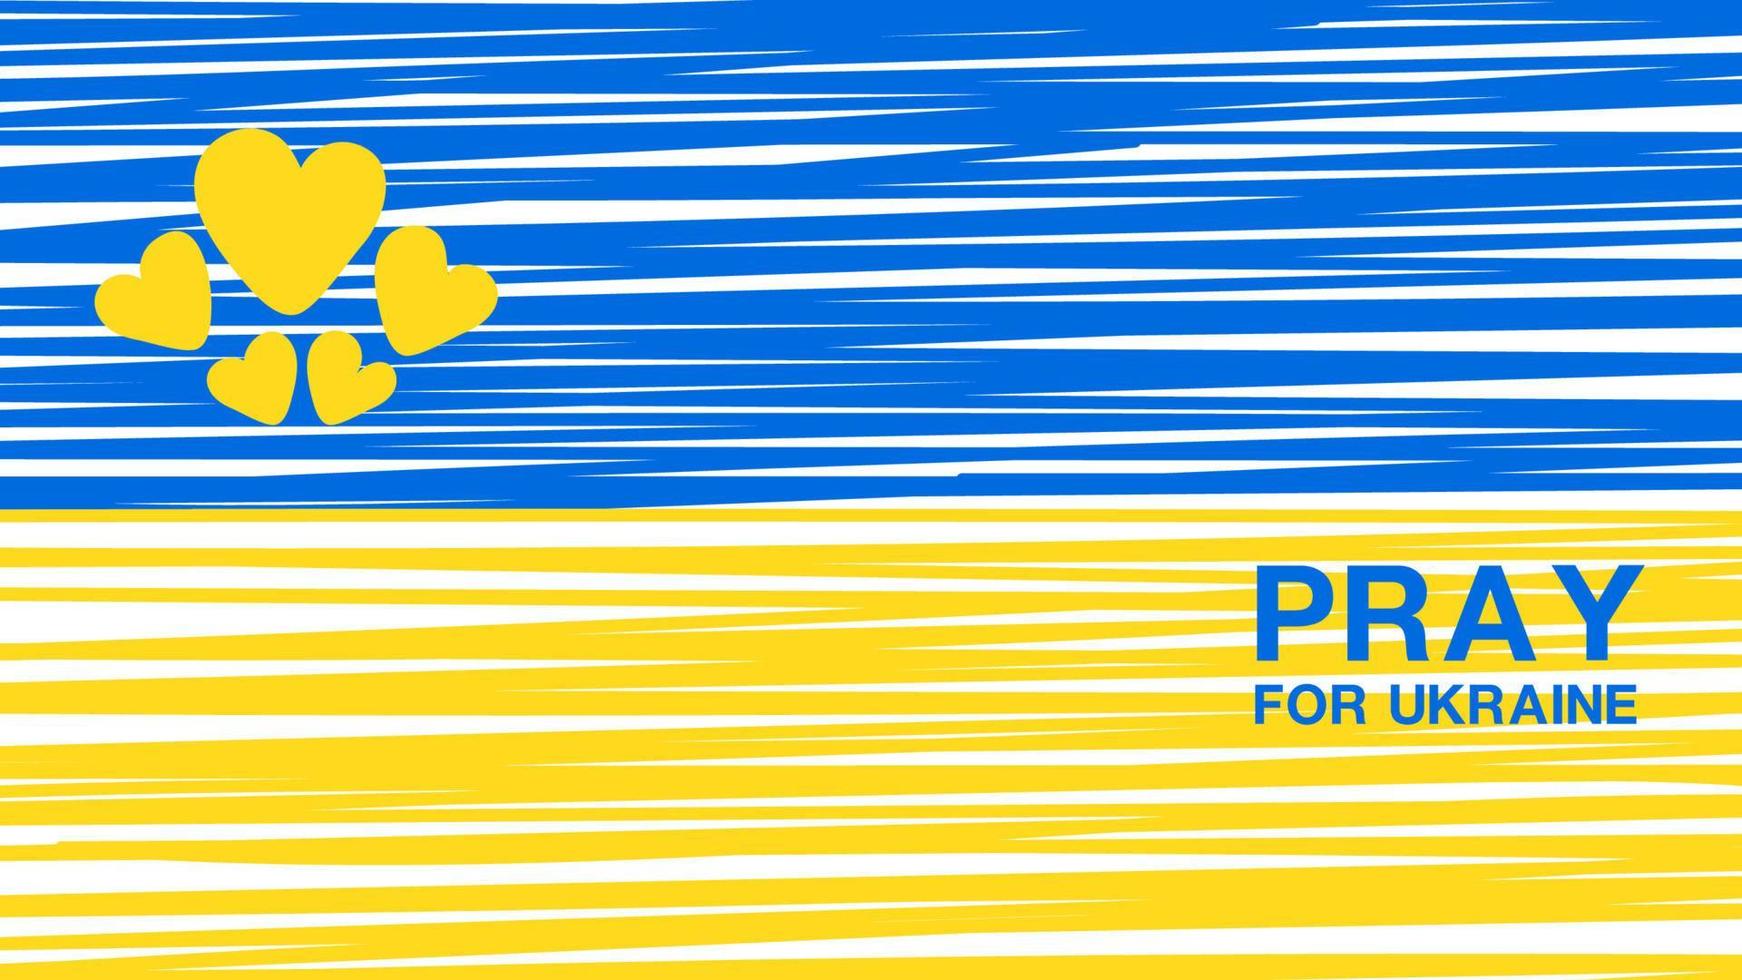 orar pela ucrânia no fundo do polígono da bandeira, textura do polígono da bandeira da ucrânia, sem guerra no conceito da ucrânia, design de folheto de folheto, banner azul e amarelo, ilustração vetorial vetor